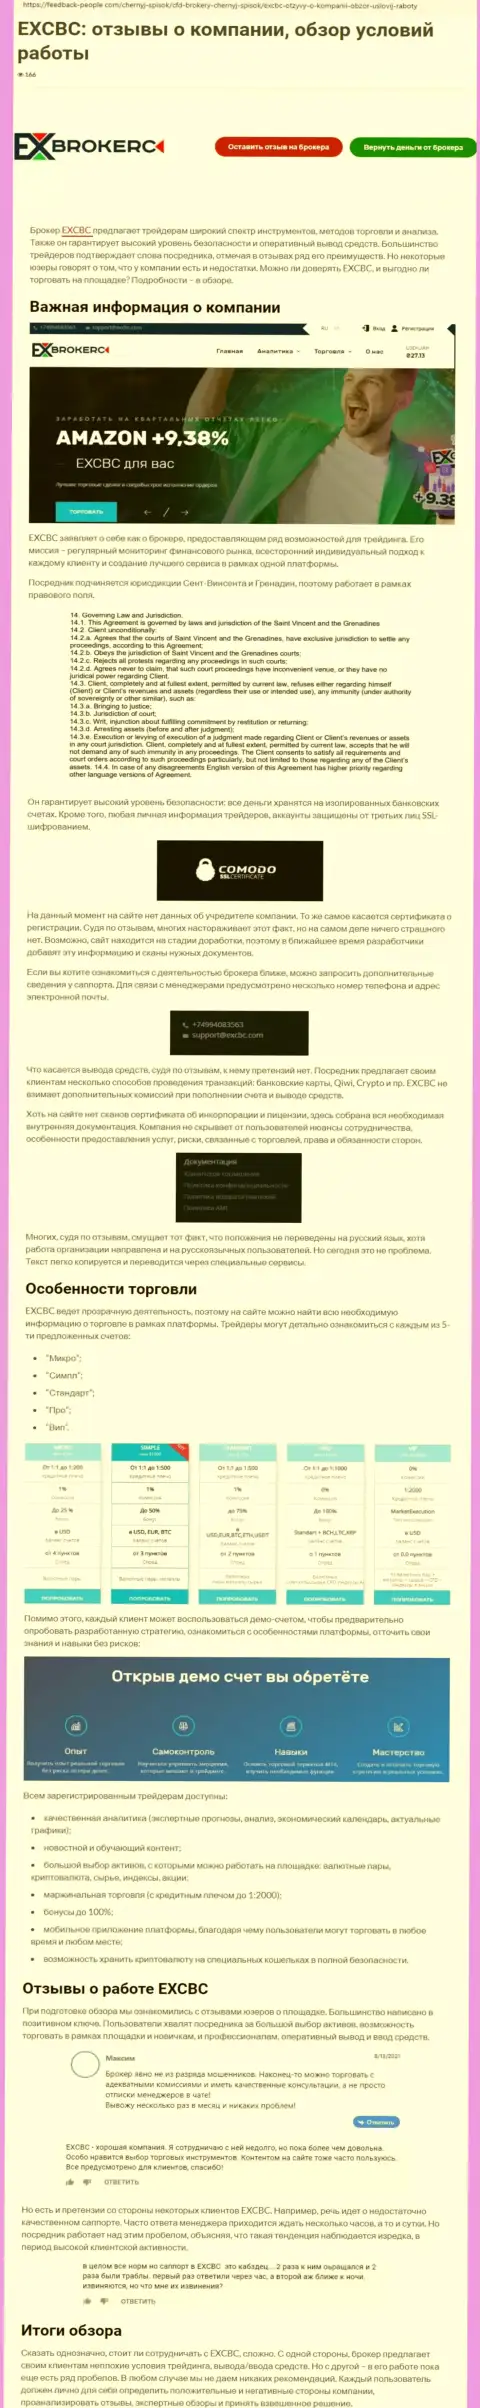 Обзор условий для торгов ФОРЕКС дилинговой компании ЕХКБК Ком на web-портале feddback-people com